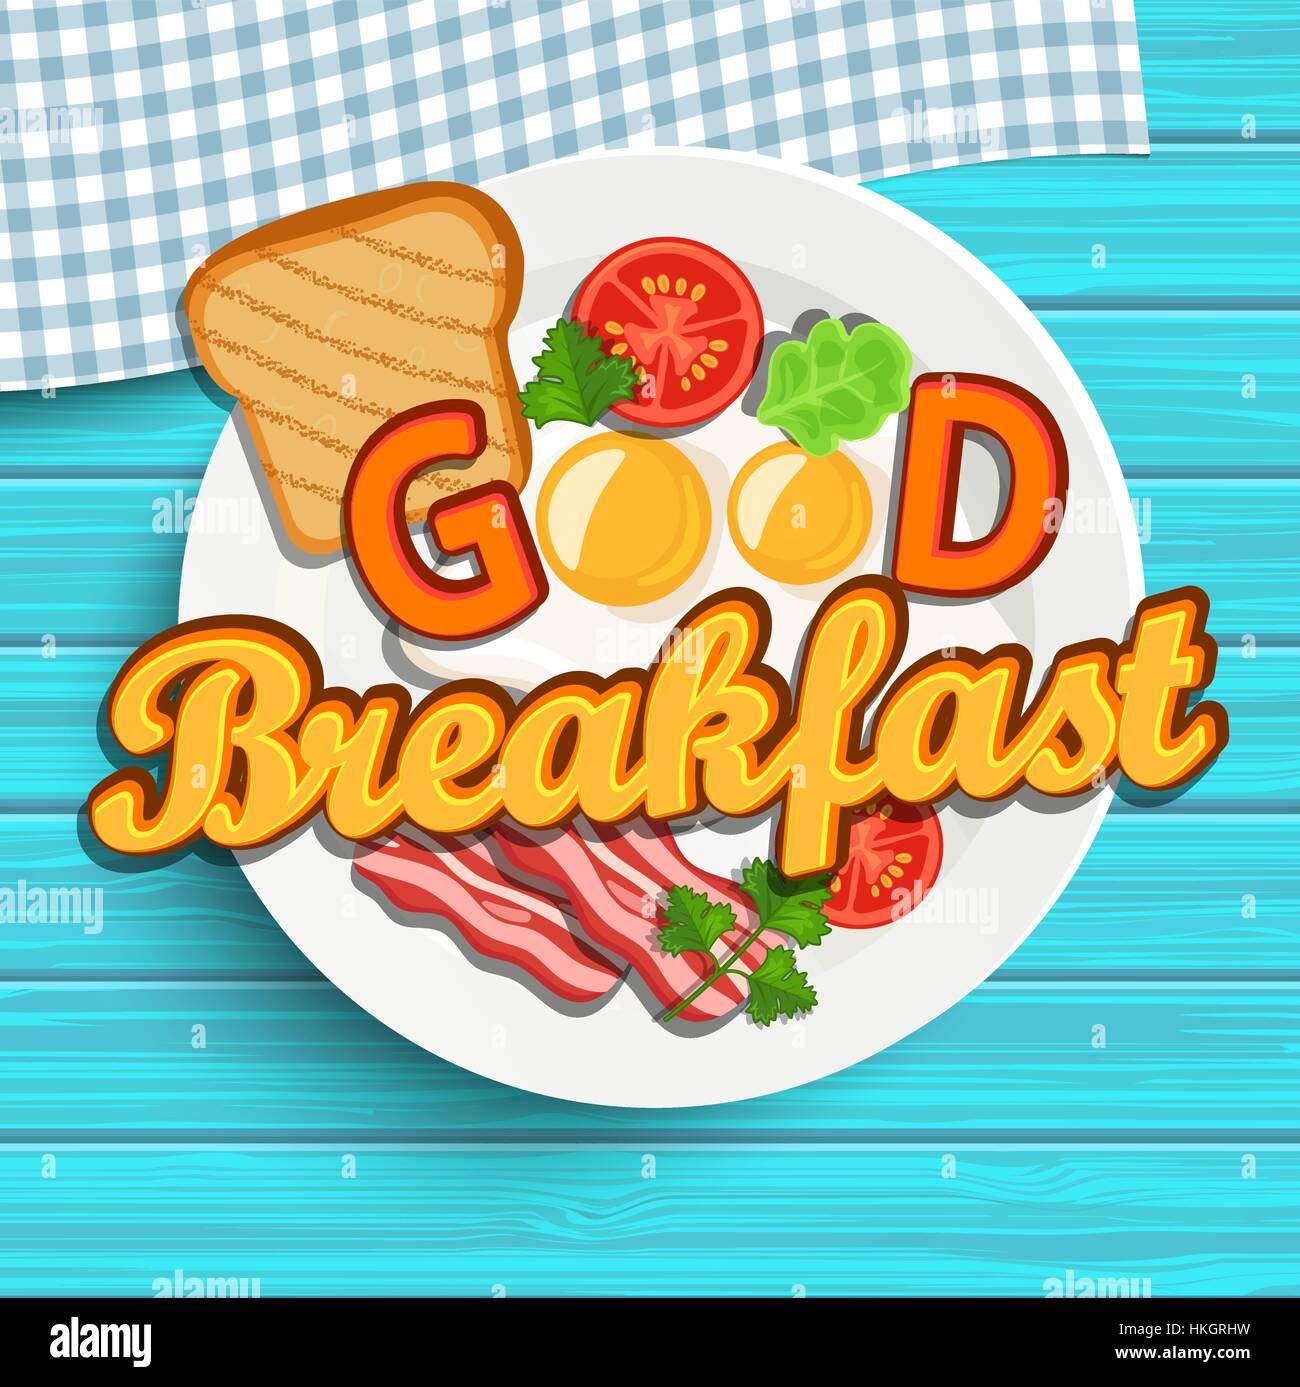 Prima colazione inglese - uovo fritto, pomodori, bacon e toast. Vista dall'alto. Blu texture di legno. Lettering - Buongiorno, illustrazione vettoriale. Illustrazione Vettoriale